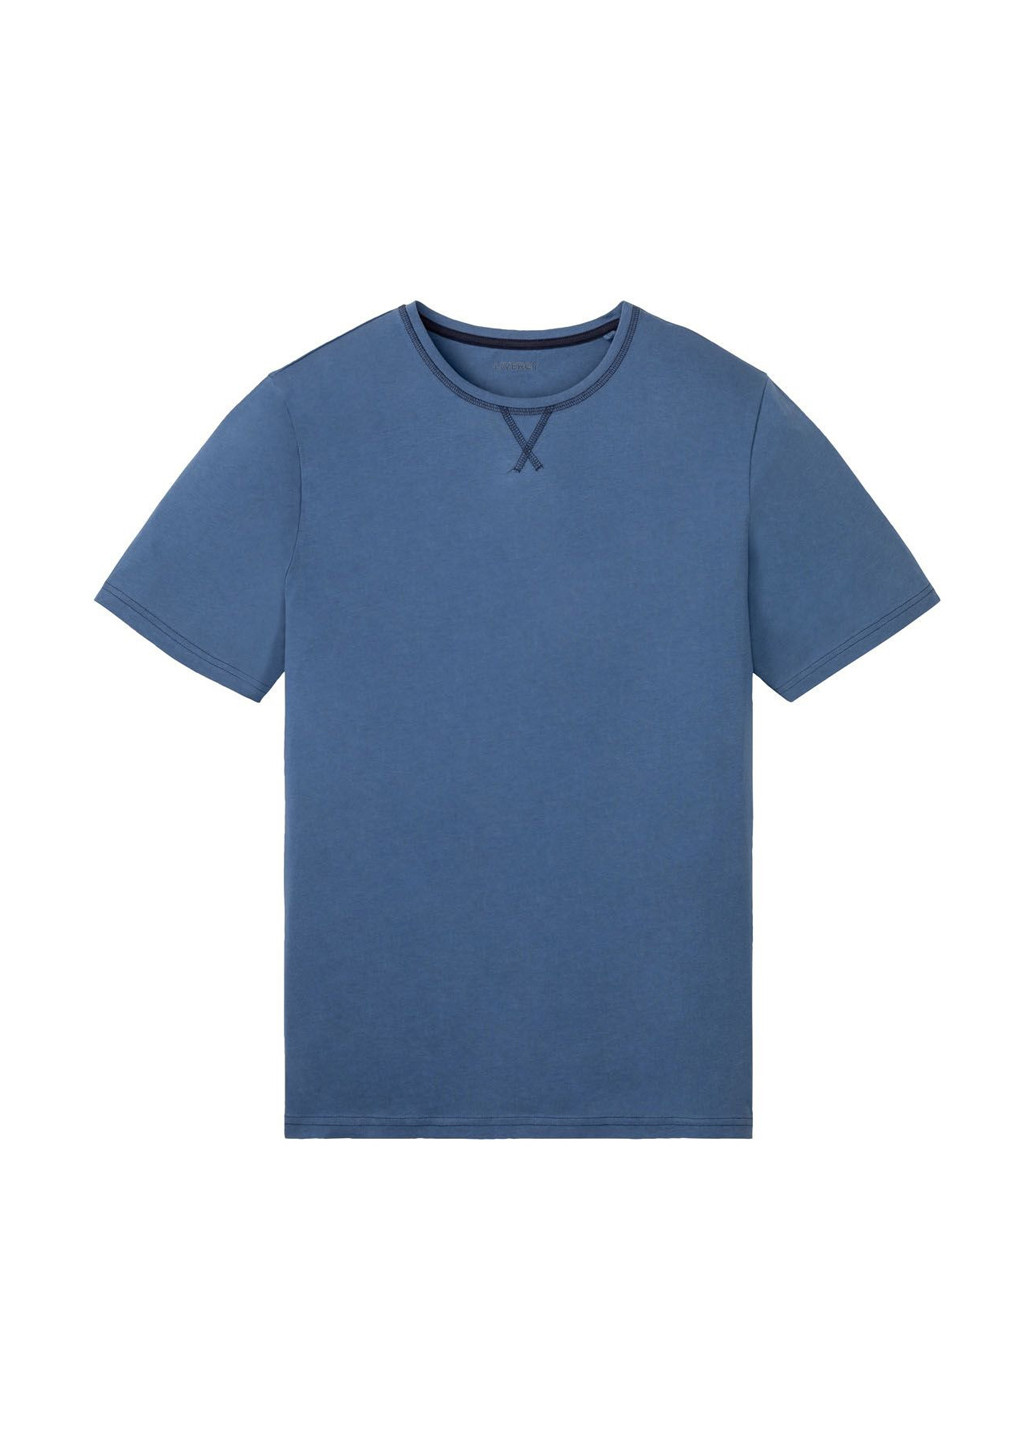 Піжама (футболка, шорти) Livergy футболка + шорти клітинка синя домашня трикотаж, бавовна